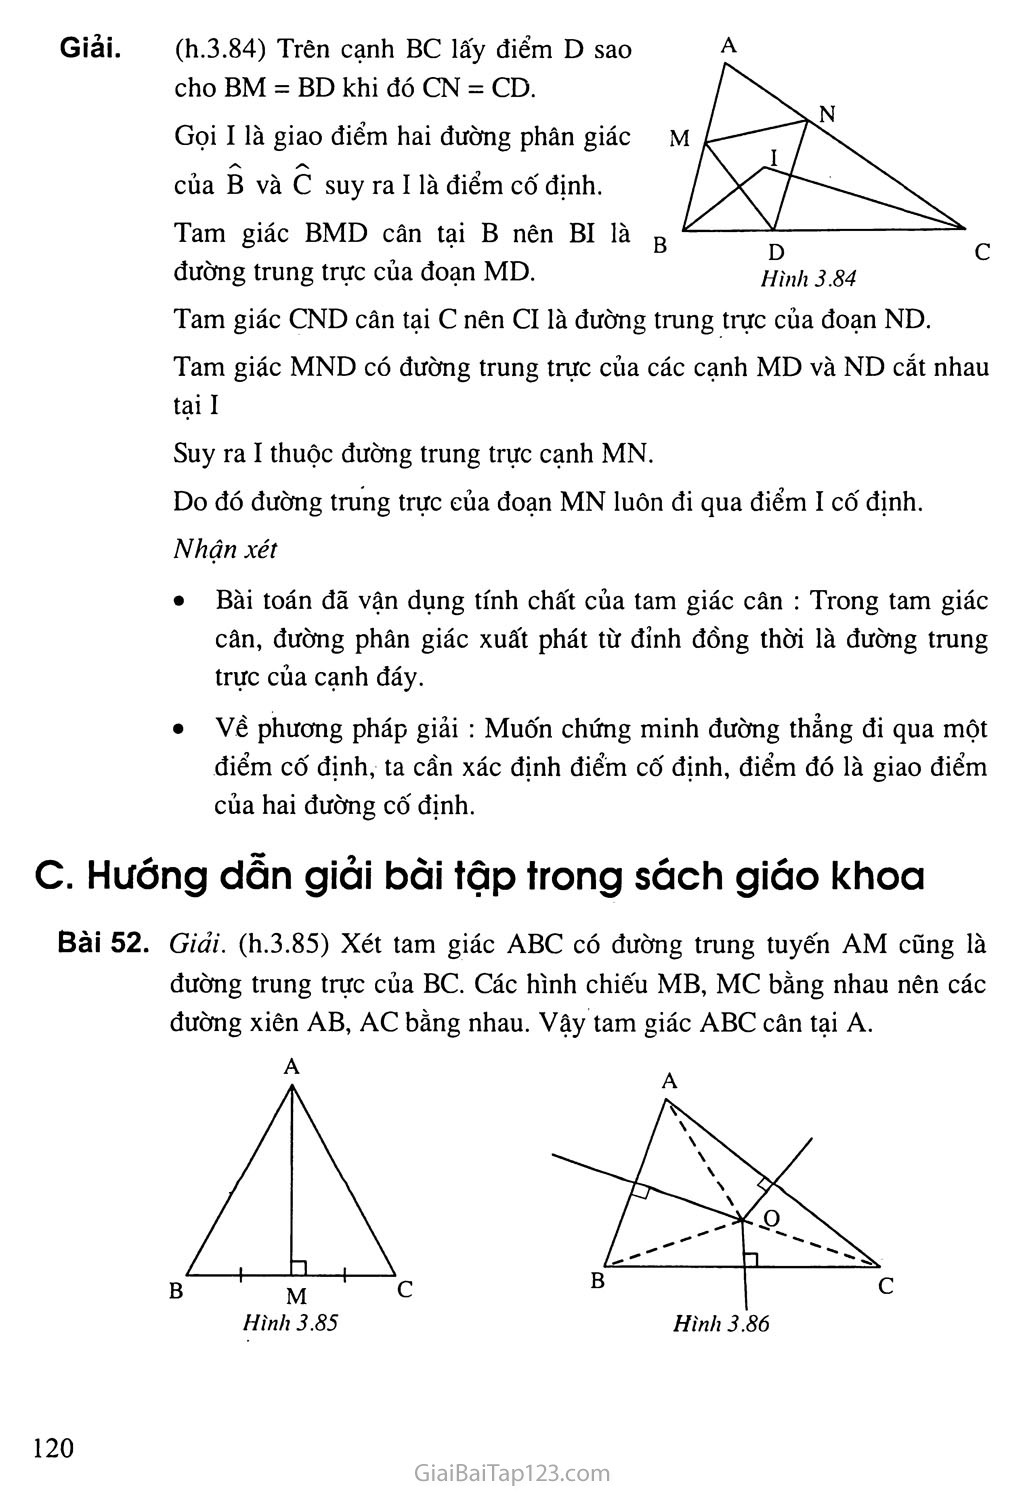 Bài 8. Tình chất ba đường trung trực của một tam giác trang 2